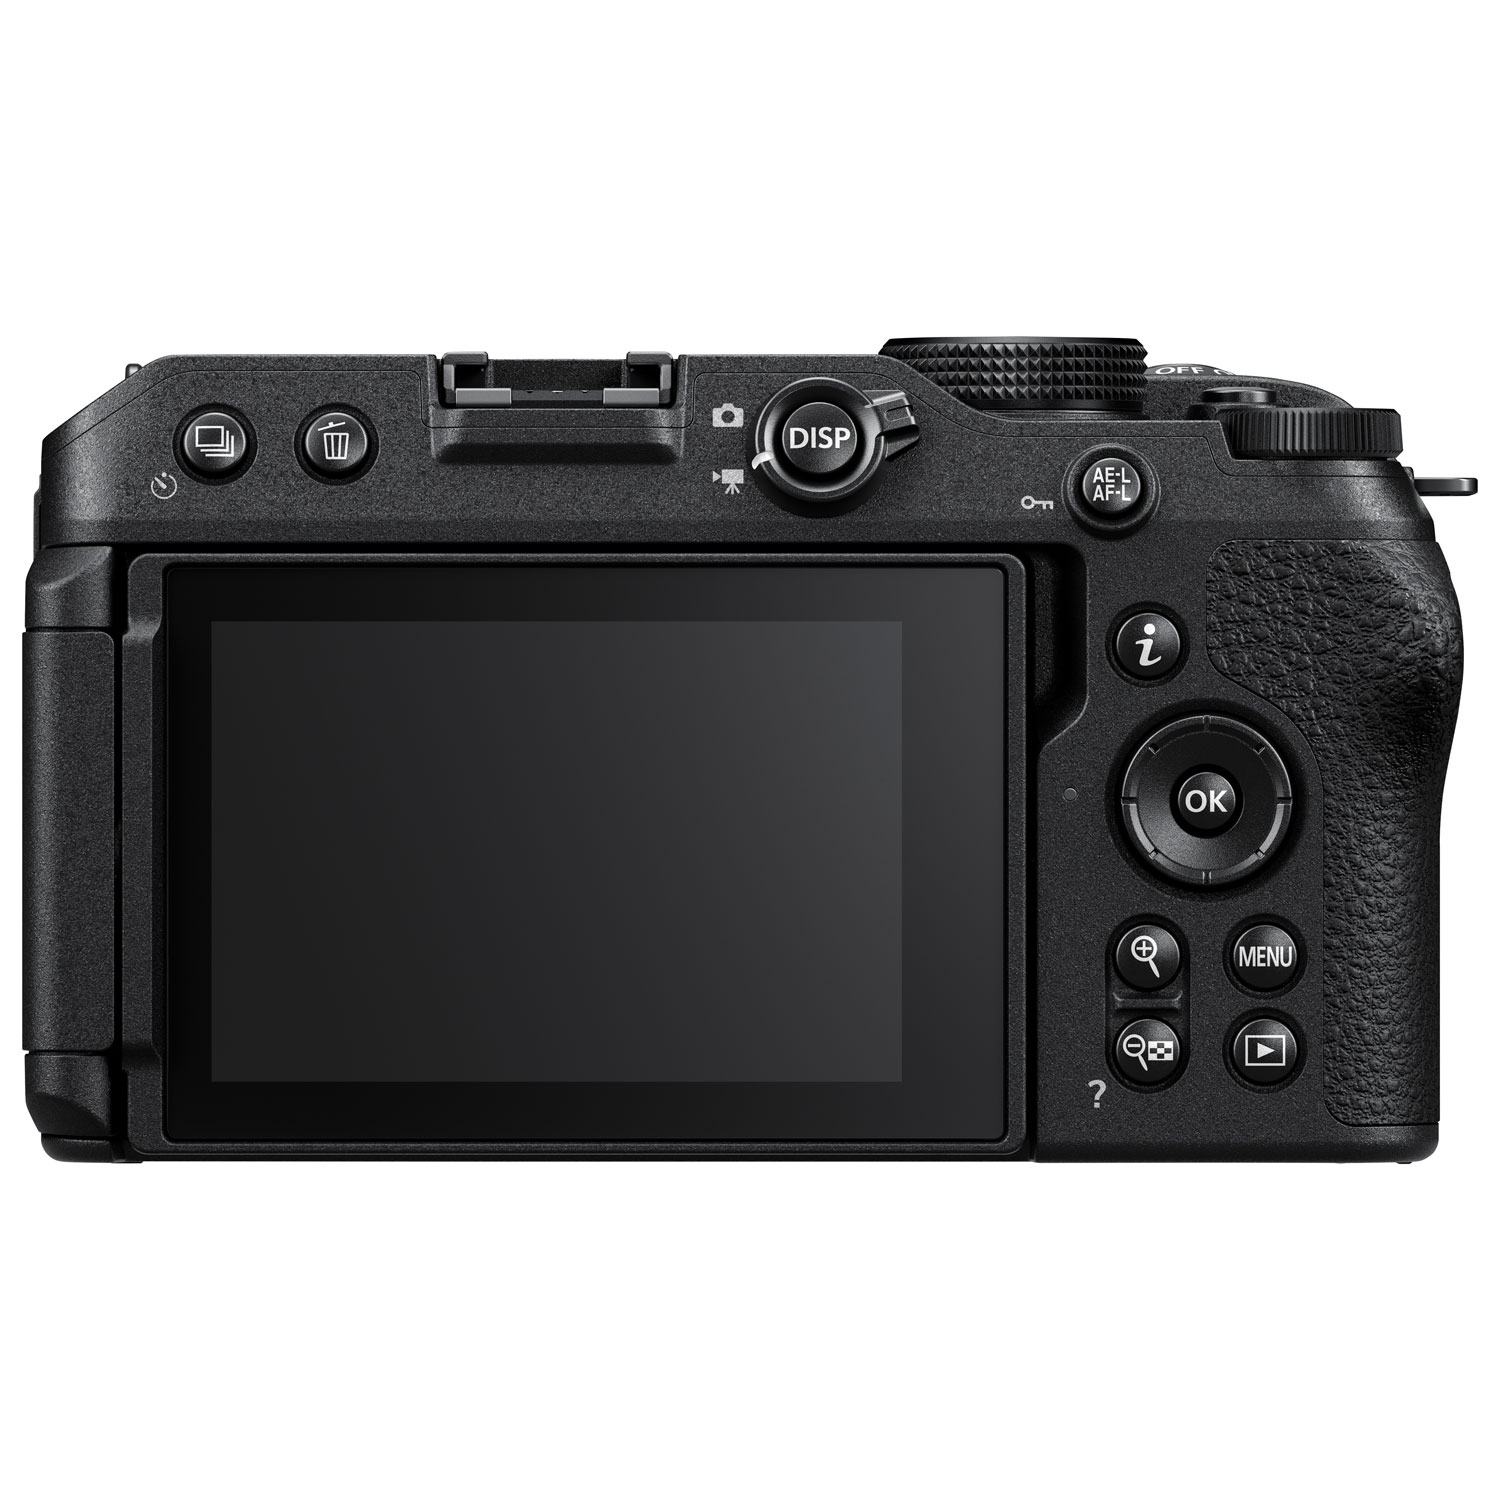 Nikon Z30 Mirrorless Camera with NIKKOR Z DX 16-50mm VR Lens Kit